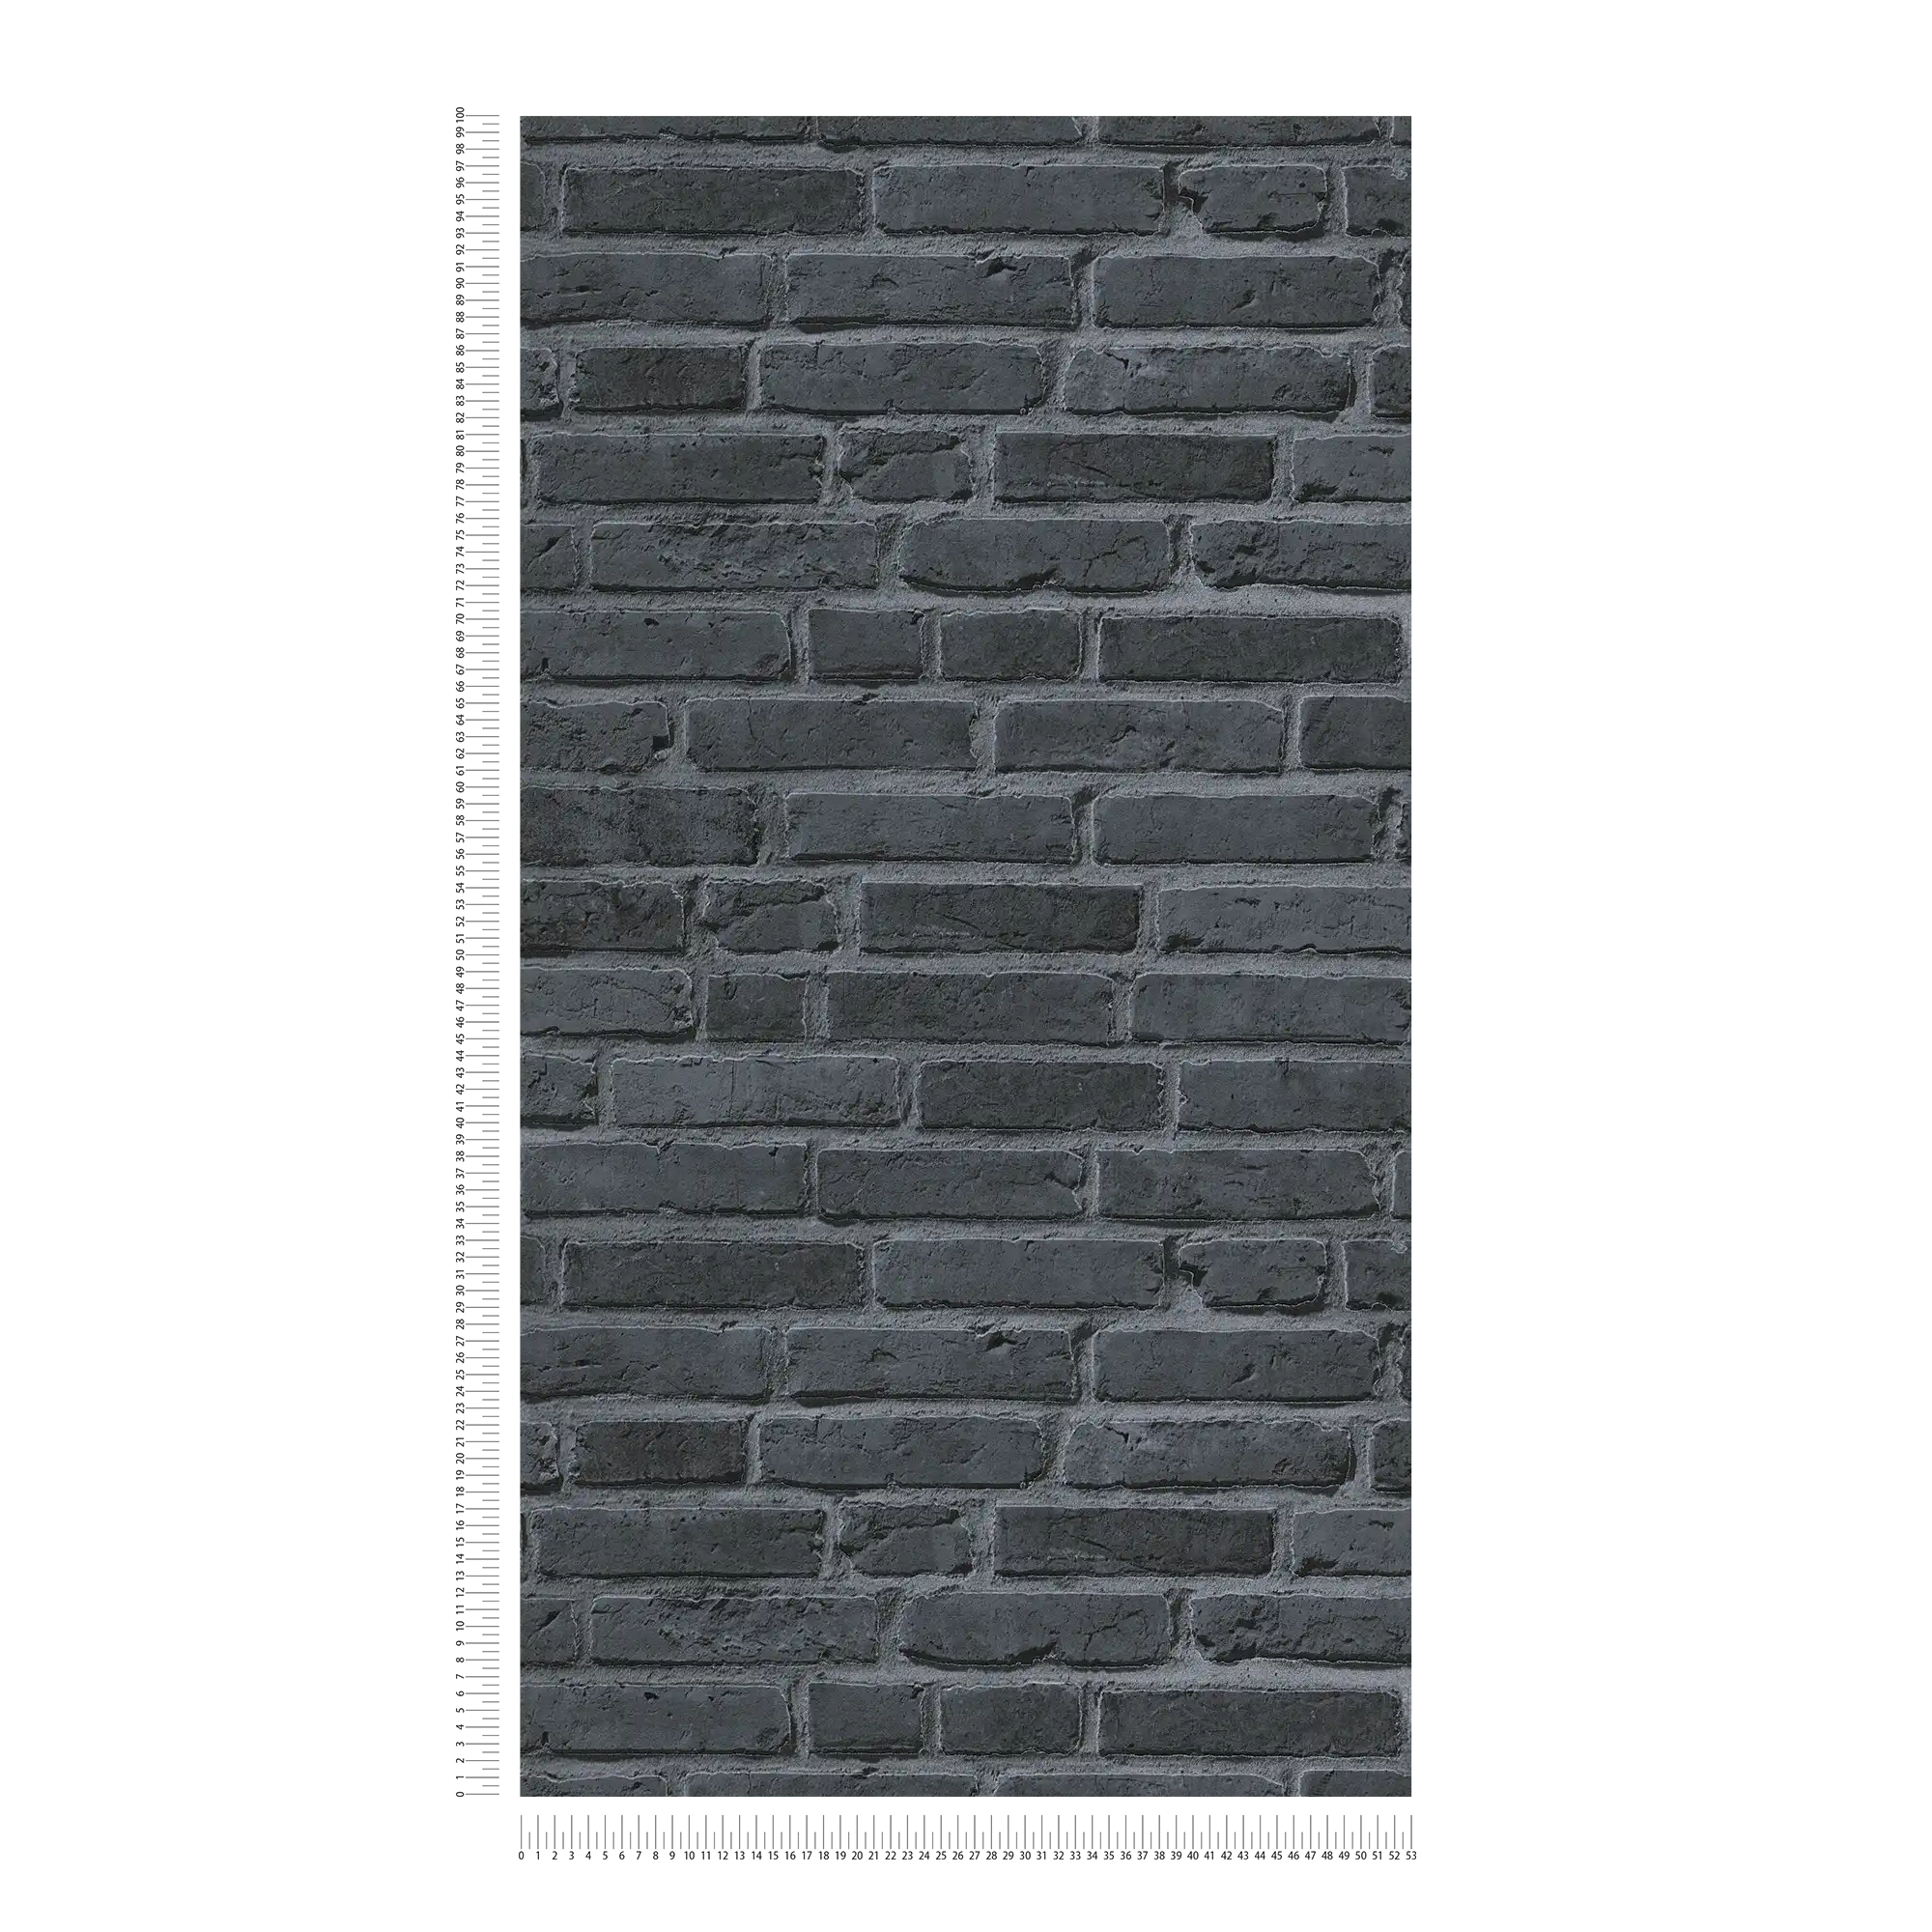             Carta da parati effetto pietra con mattoncini neri - nero, grigio
        